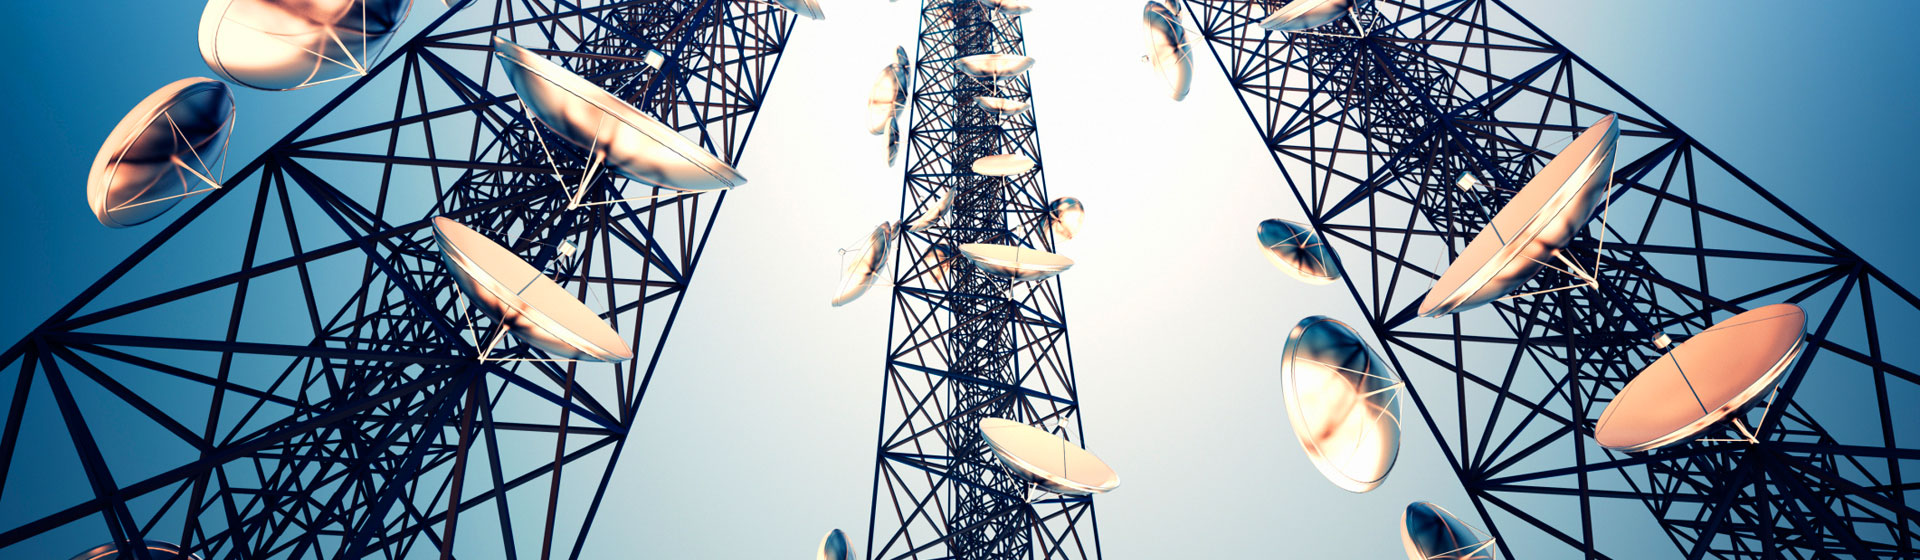 Solutions de réseaux de télécommunications et de fournisseurs de services